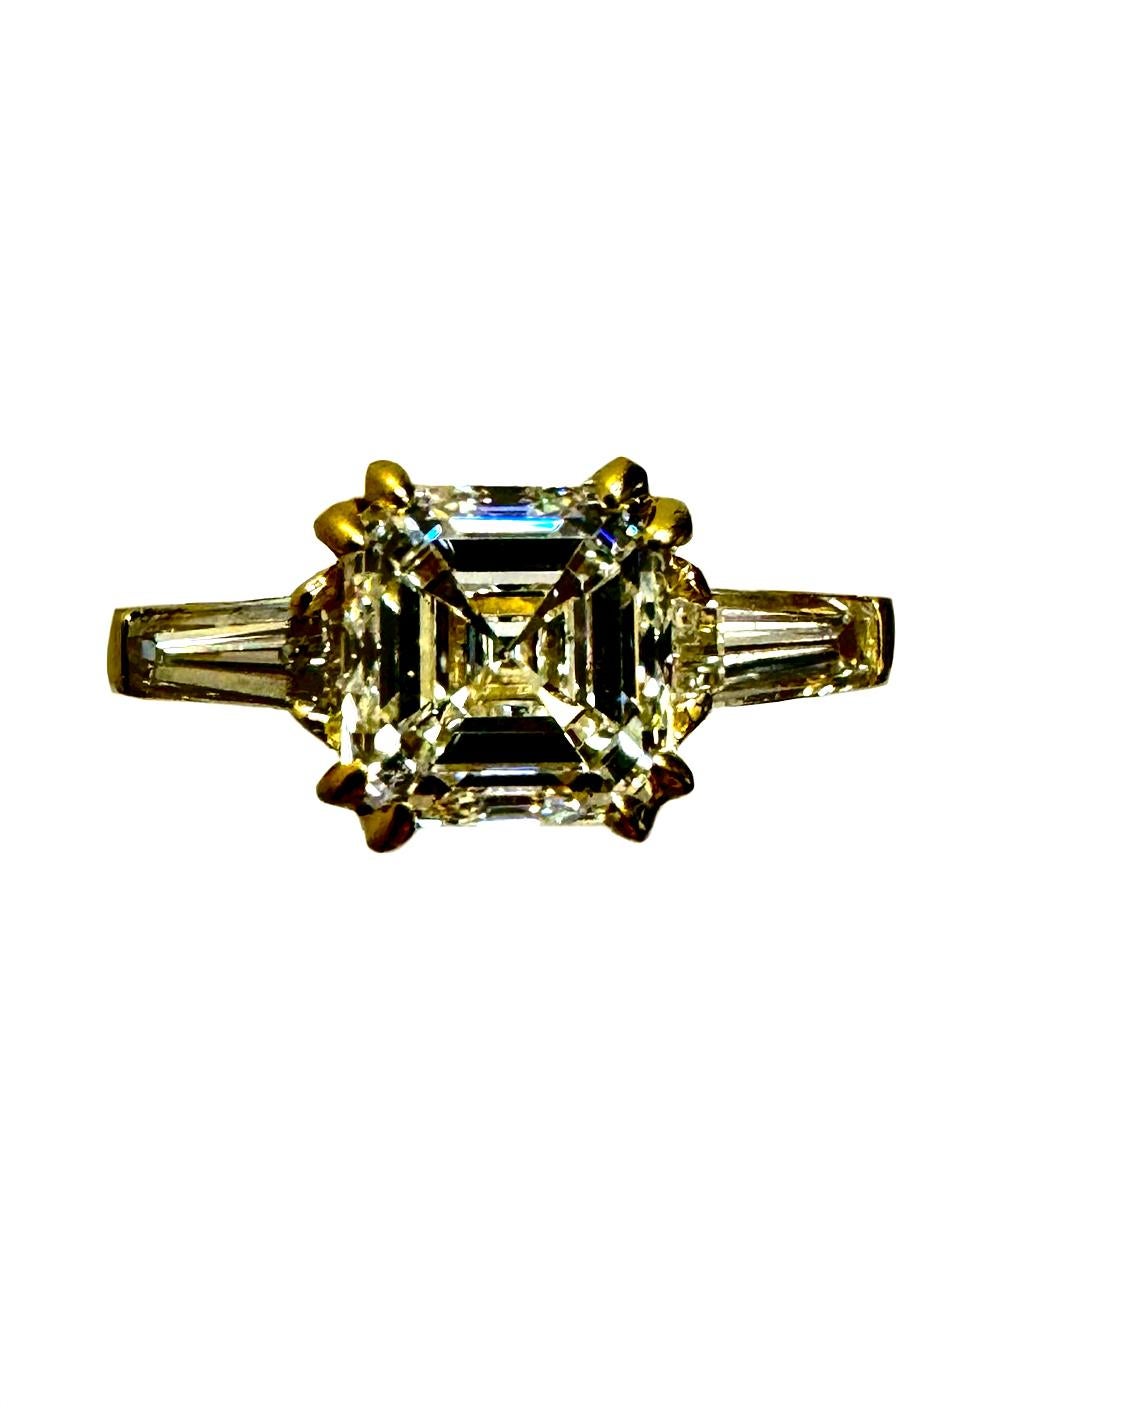 DeKara Design Collection'S

Metall- 18K Gelbgold, .750.  90% Platin 10% Iridium.

Größe: 6 3/4.  KOSTENLOSE GRÖSSENMESSUNG!!!!

Steine - GIA-zertifizierter Diamant im Asscher-Schliff, Farbe J, Reinheit SI1, zwei spitz zulaufende Baguette-Diamanten,